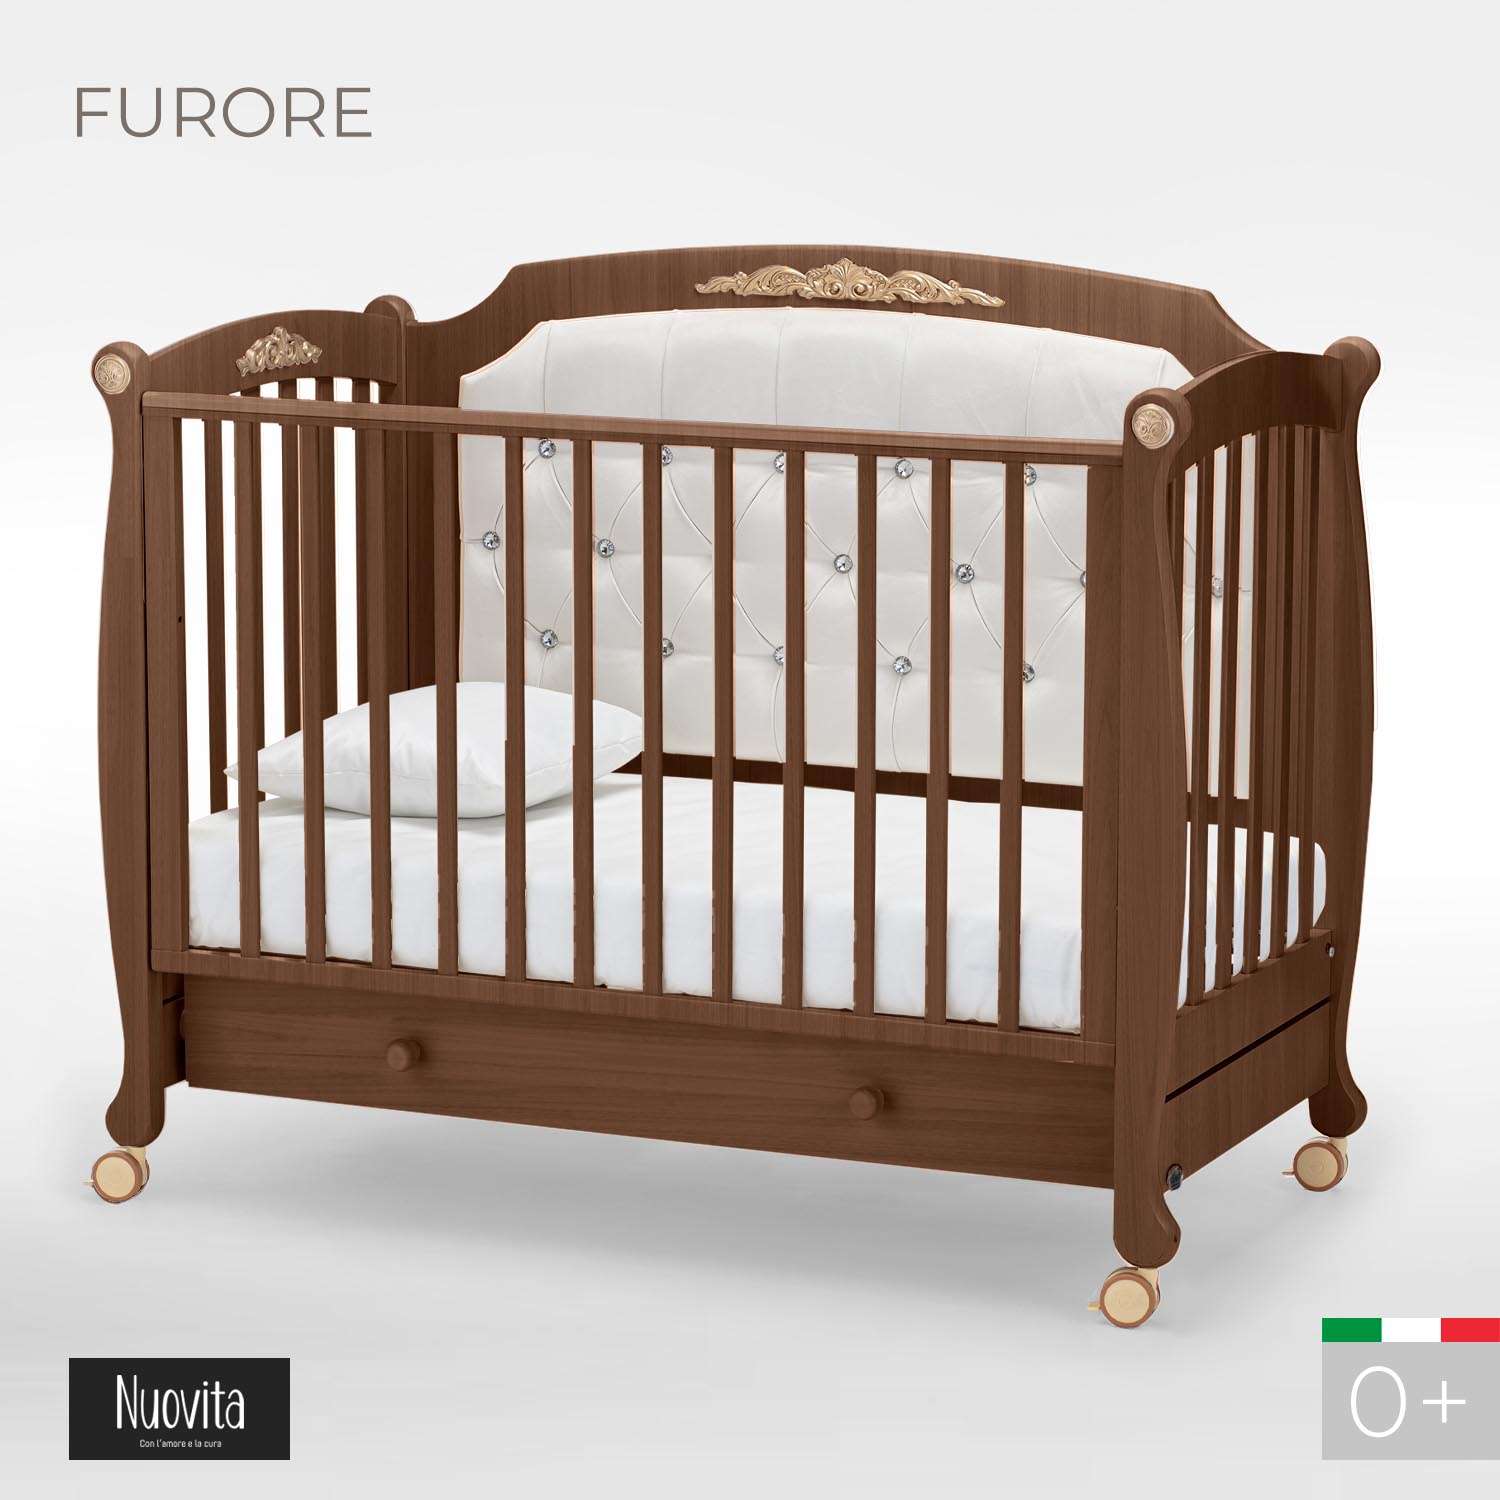 Детская кроватка Nuovita Furore прямоугольная, без маятника (темный орех) - фото 2